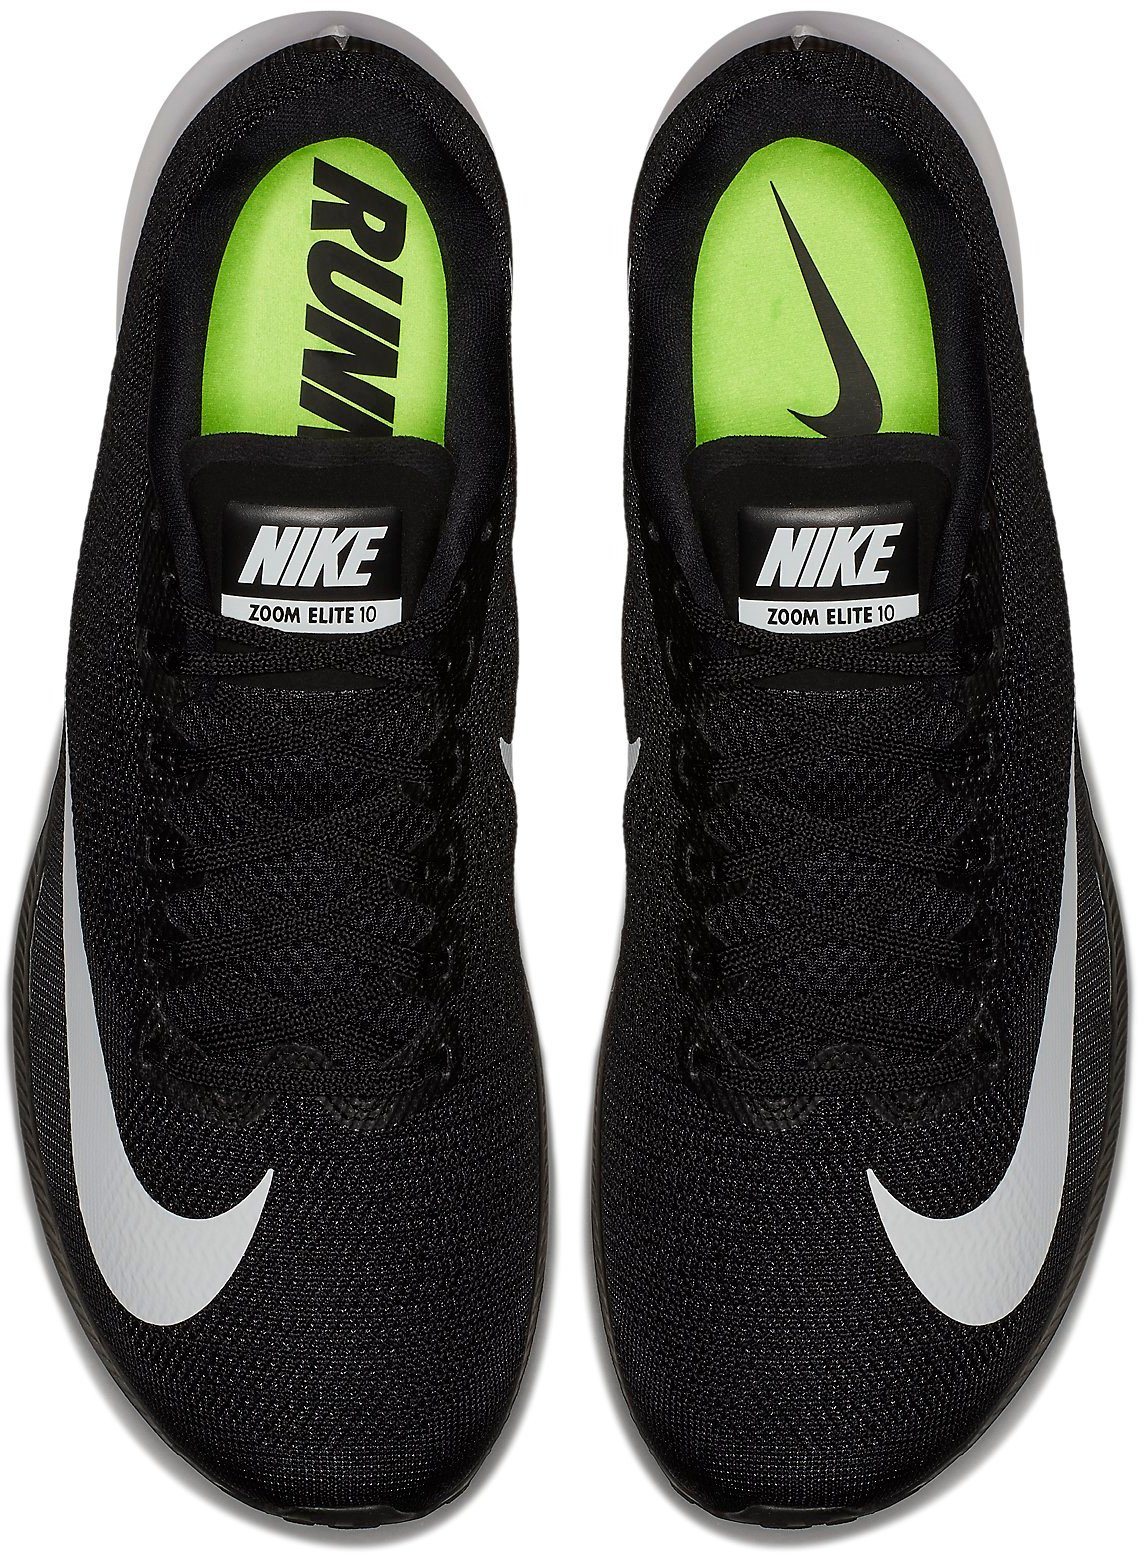 Zapatillas de Nike AIR ZOOM ELITE 10 - 11teamsports.es